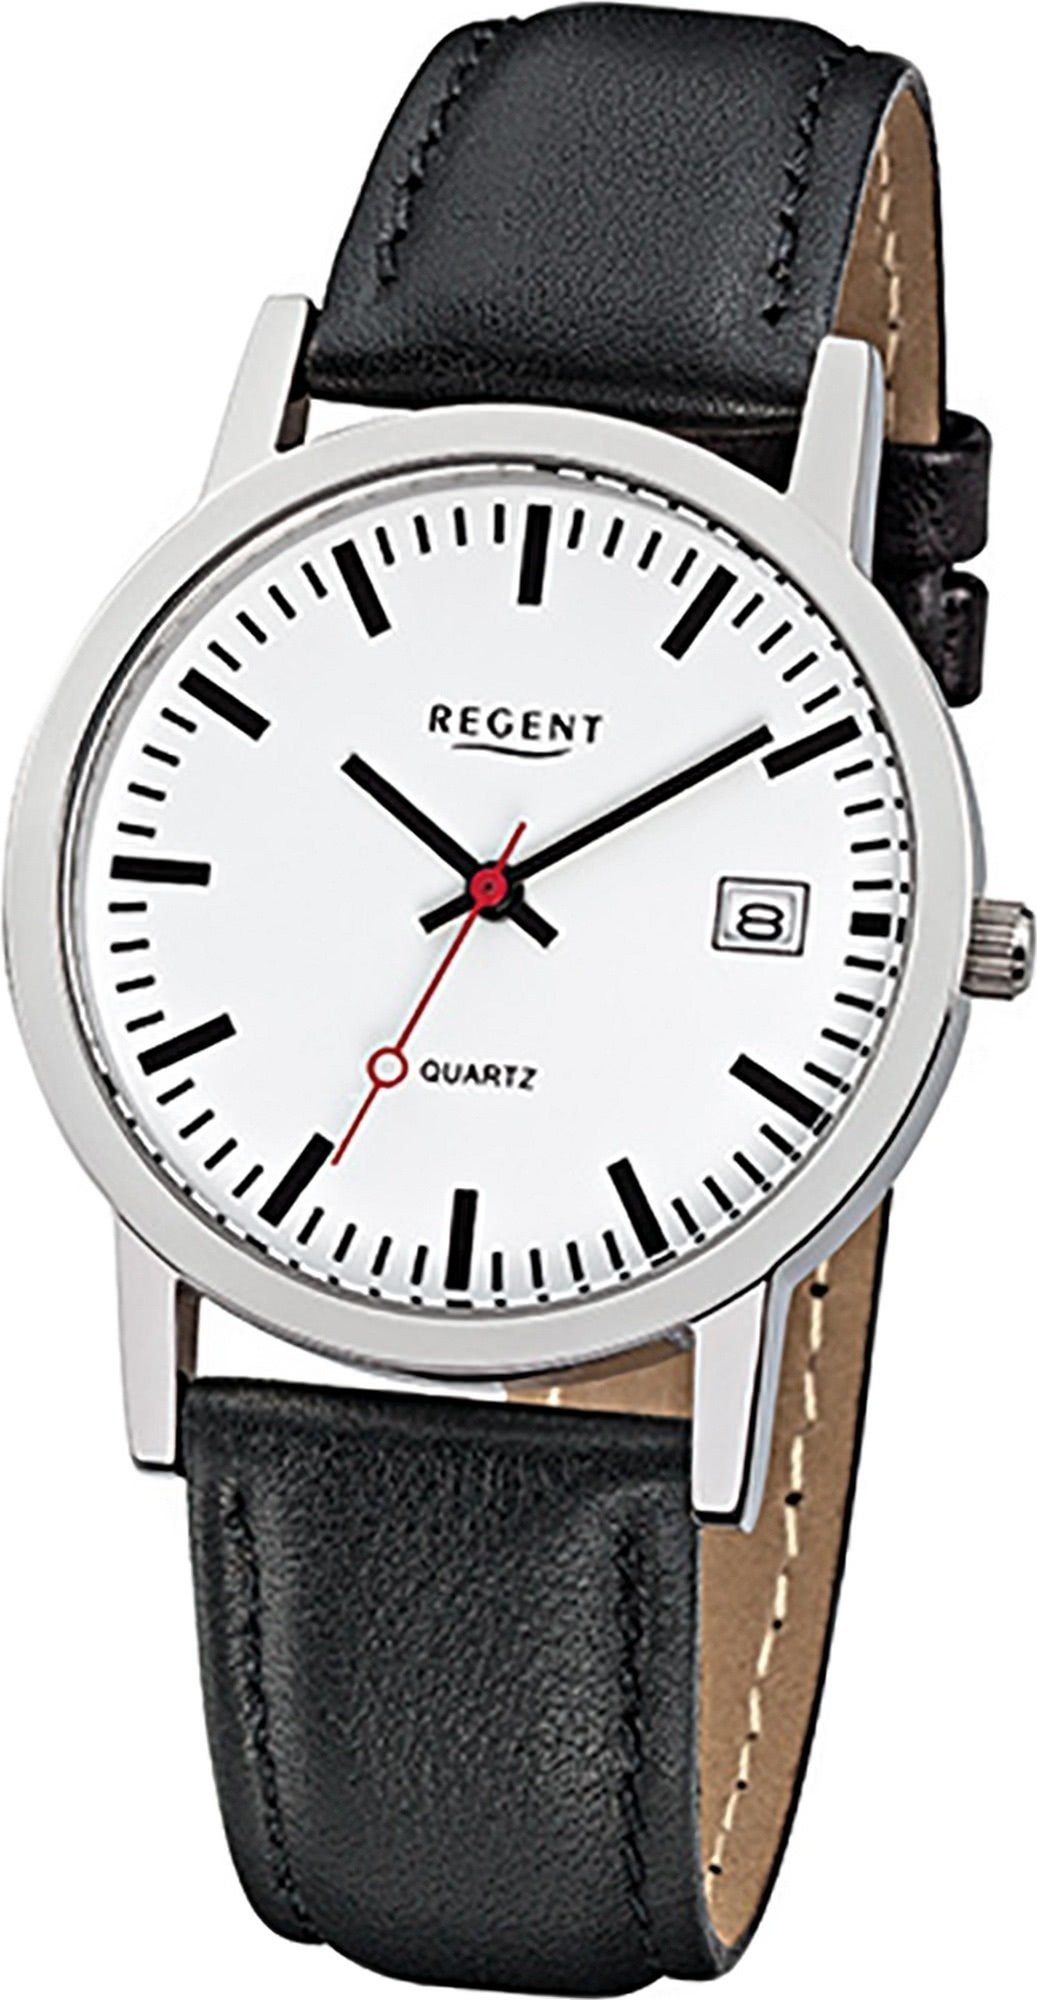 Regent Quarzuhr Regent Leder Damen Herren Uhr F-794, Damen, Herrenuhr Lederarmband schwarz, rundes Gehäuse, mittel (34mm)